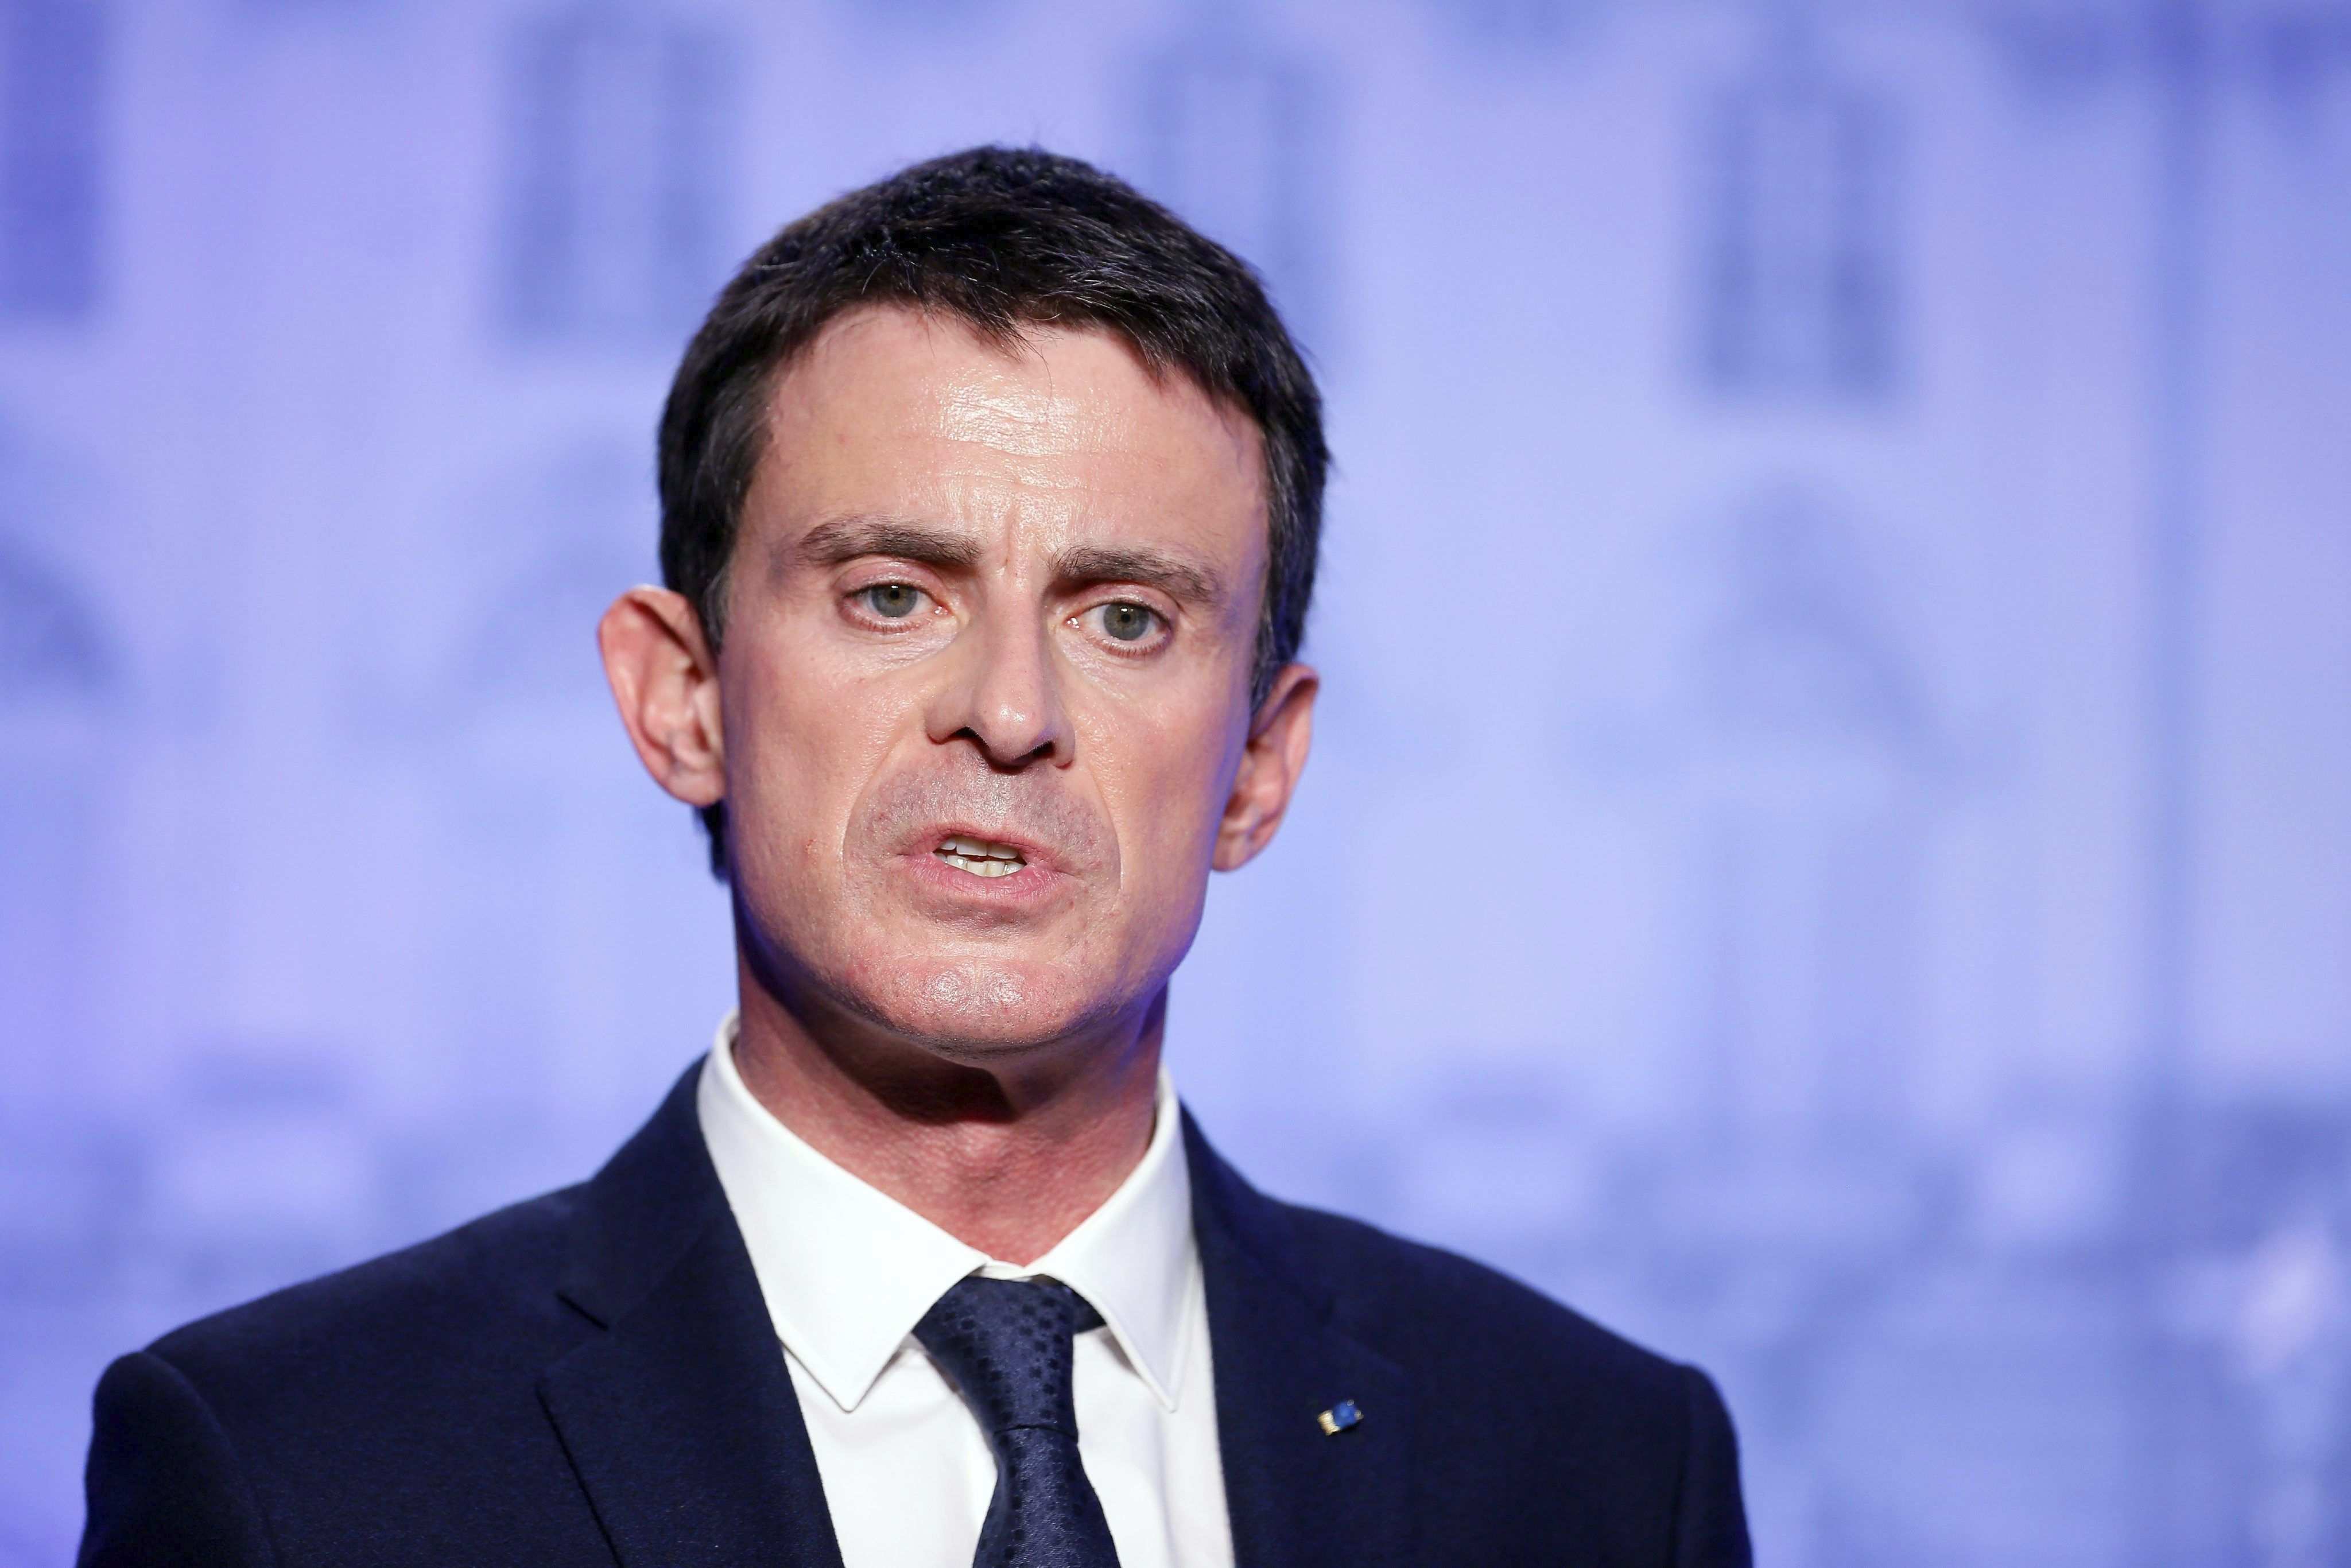 El PP també admet contactes amb Manuel Valls per les municipals a Barcelona